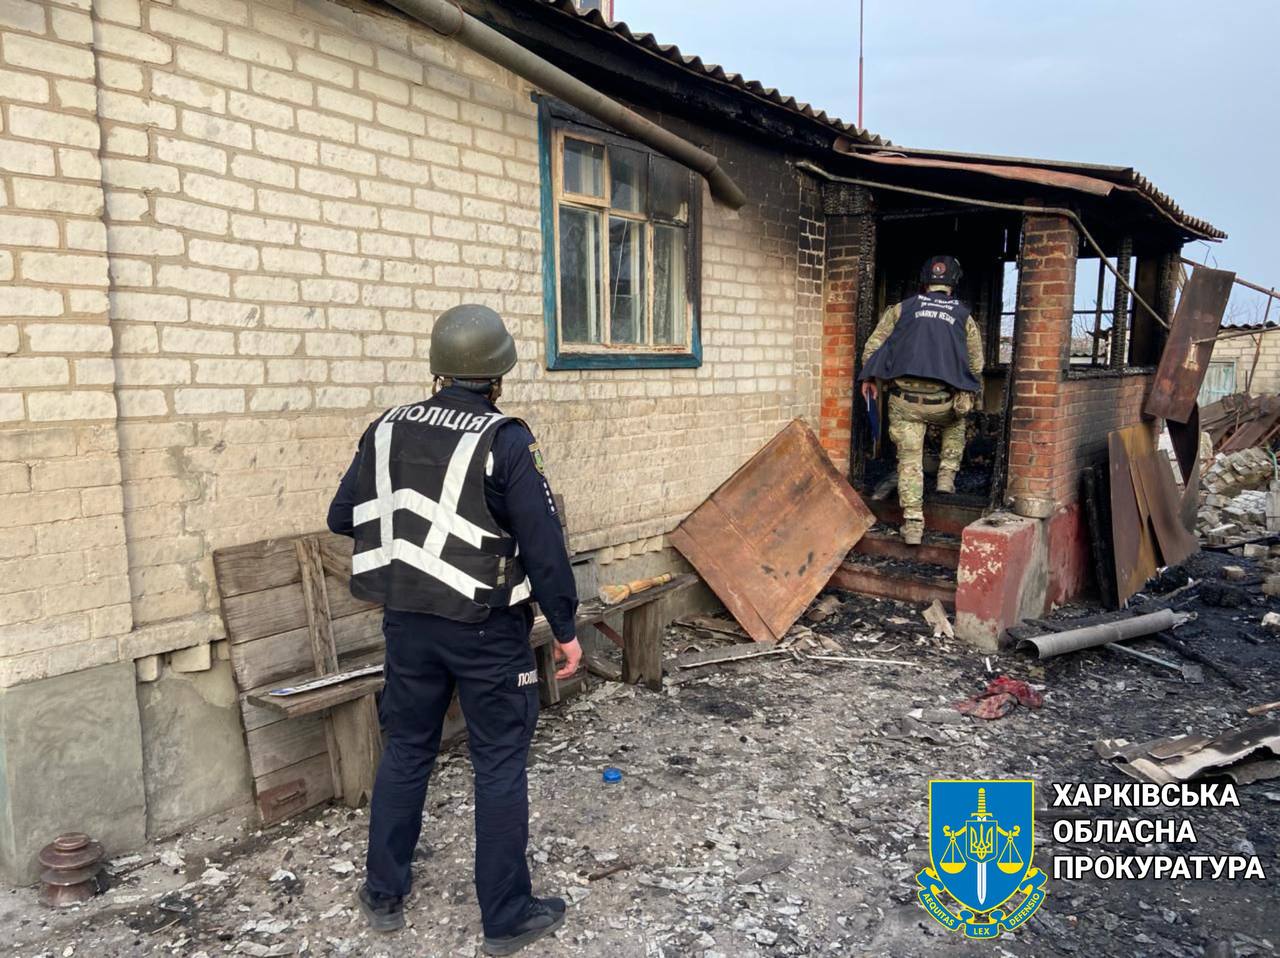 Нищили з артилерії село на Харківщині загарбники